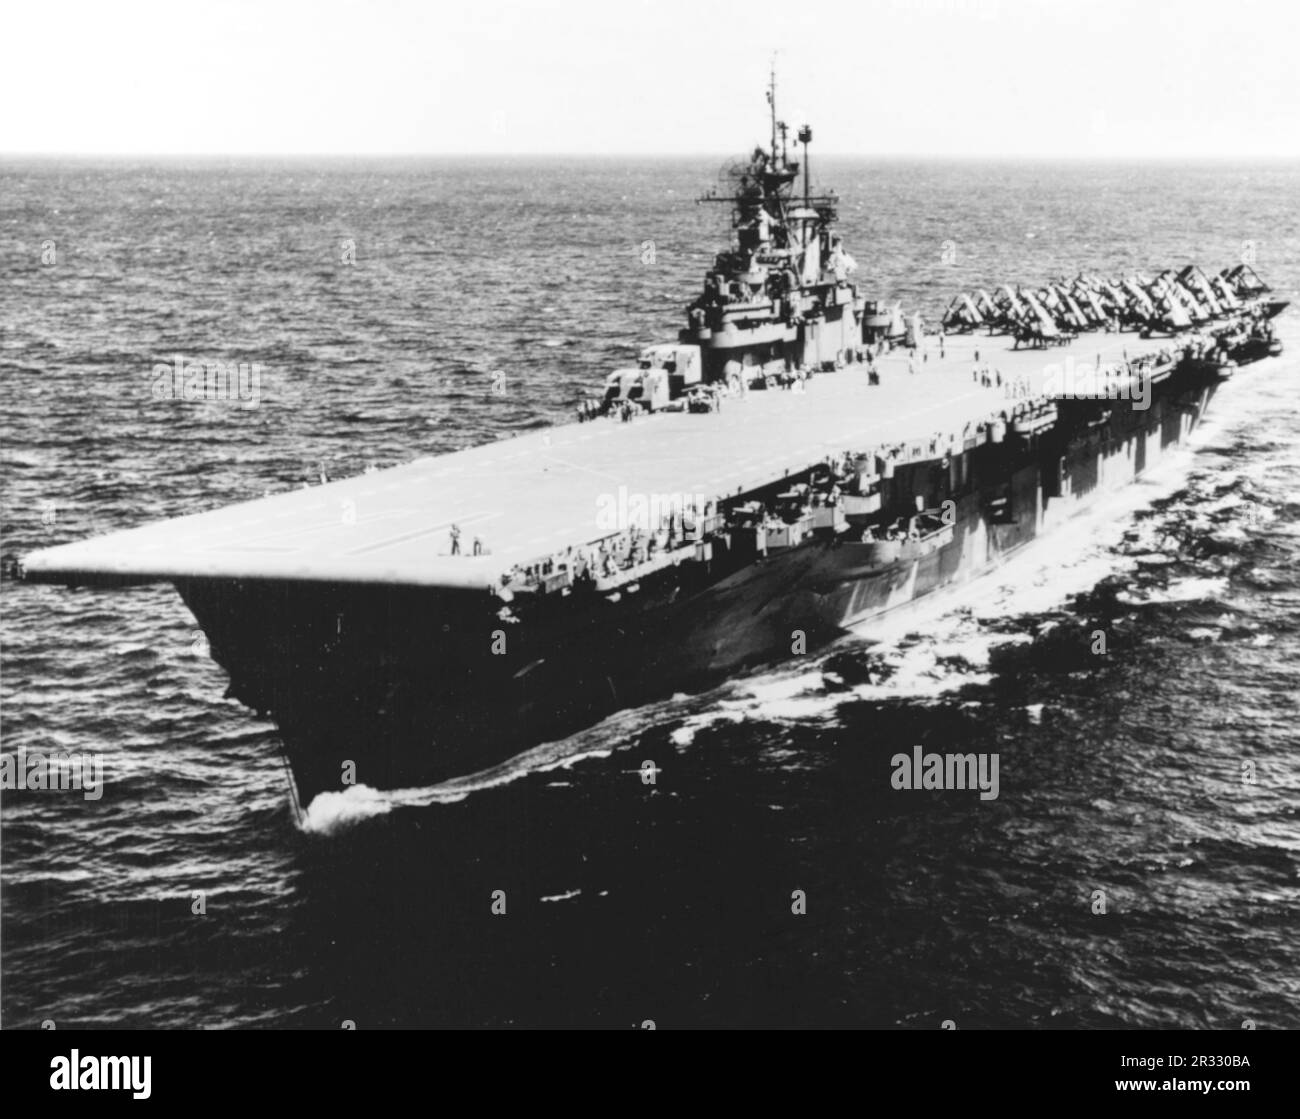 Il vettore US Essex Class USS Bunker Hill (CV-17) in mare nel 1945. La nave è stata gravemente danneggiata da due scioperi di kamikaze in un minuto il 11 maggio 1945 a Okinawa. colpisce catturati aerei completamente alimentati e armati sul ponte e ha iniziato incendi molto pericolosi. Anche se gravemente danneggiata, la nave non affondò e tornò negli Stati Uniti per la riparazione. La nave è stata smantellata nel 1966 e demolita nel 1973. Foto Stock